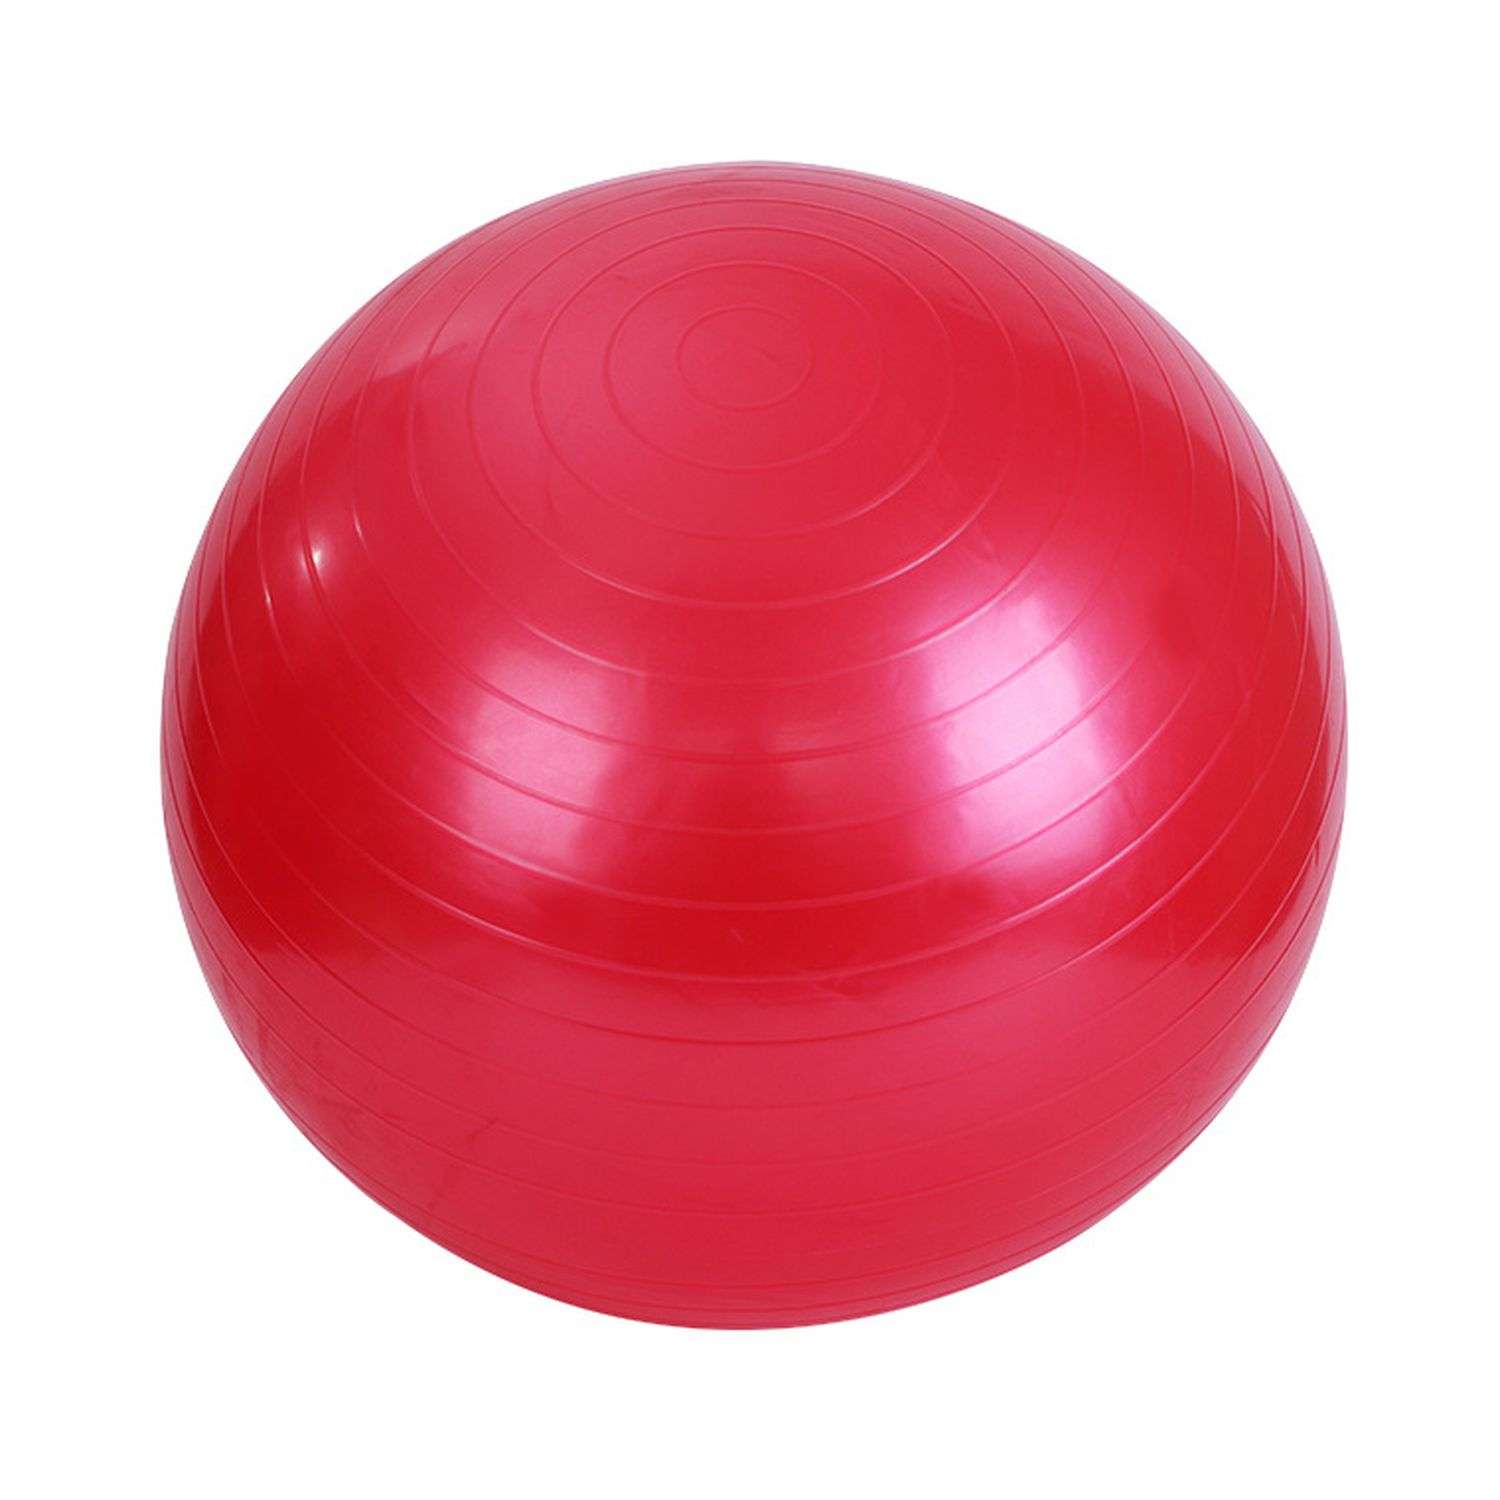 Фитбол Beroma с антивзрывным эффектом 85 см красный - фото 1